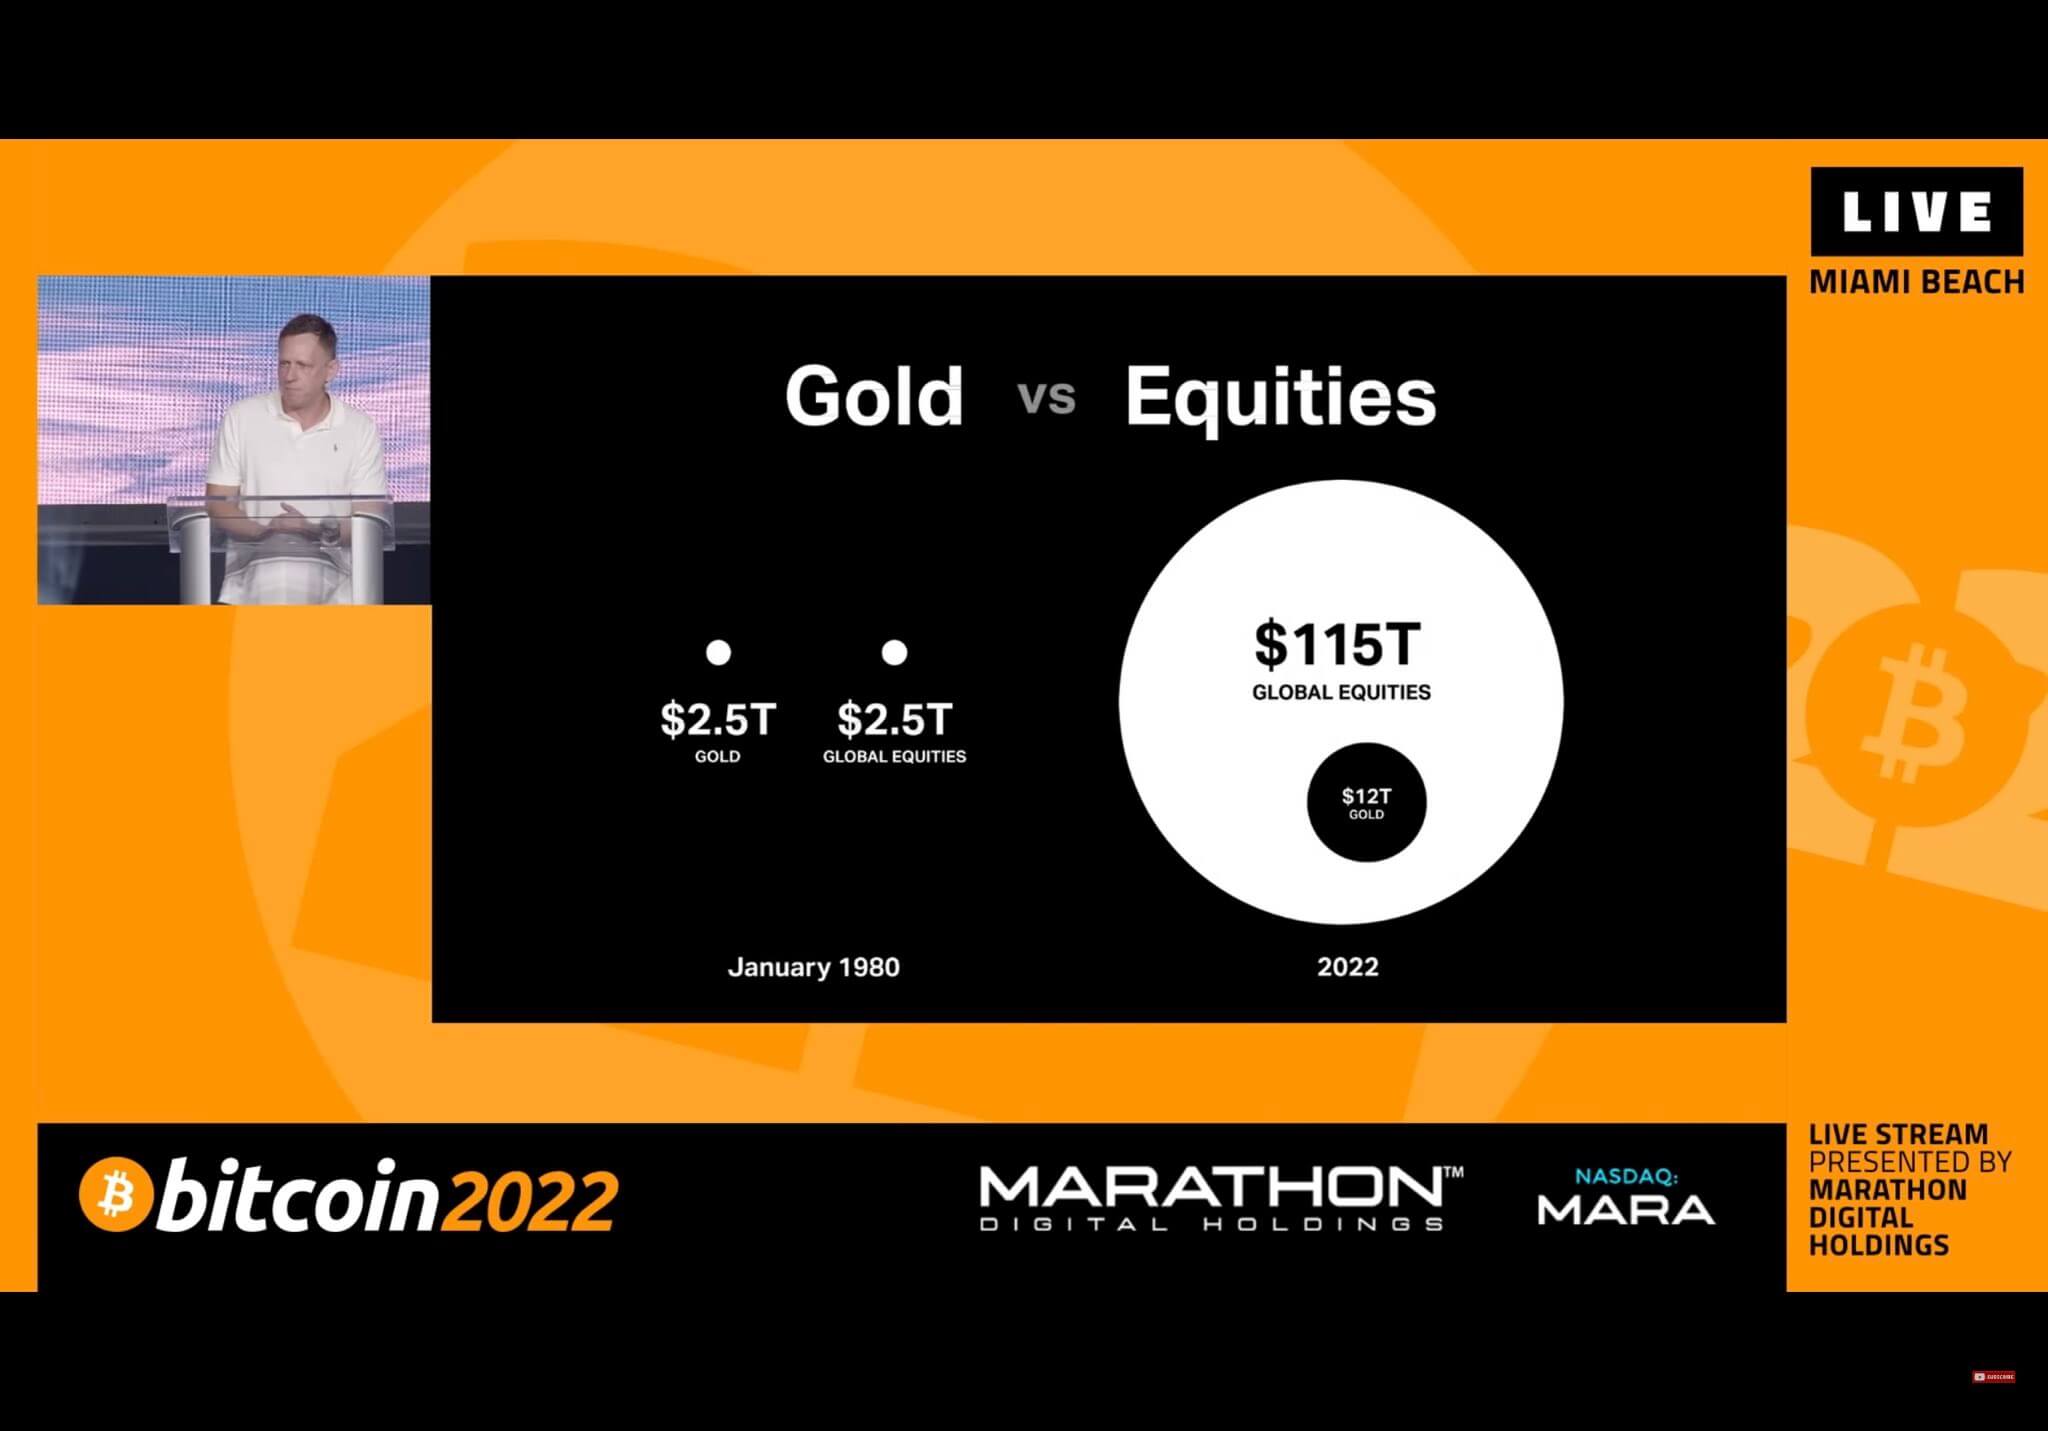 Oro frente a acciones (Fuente: Peter Thiel Slide de la Conferencia Bitcoin 2022)